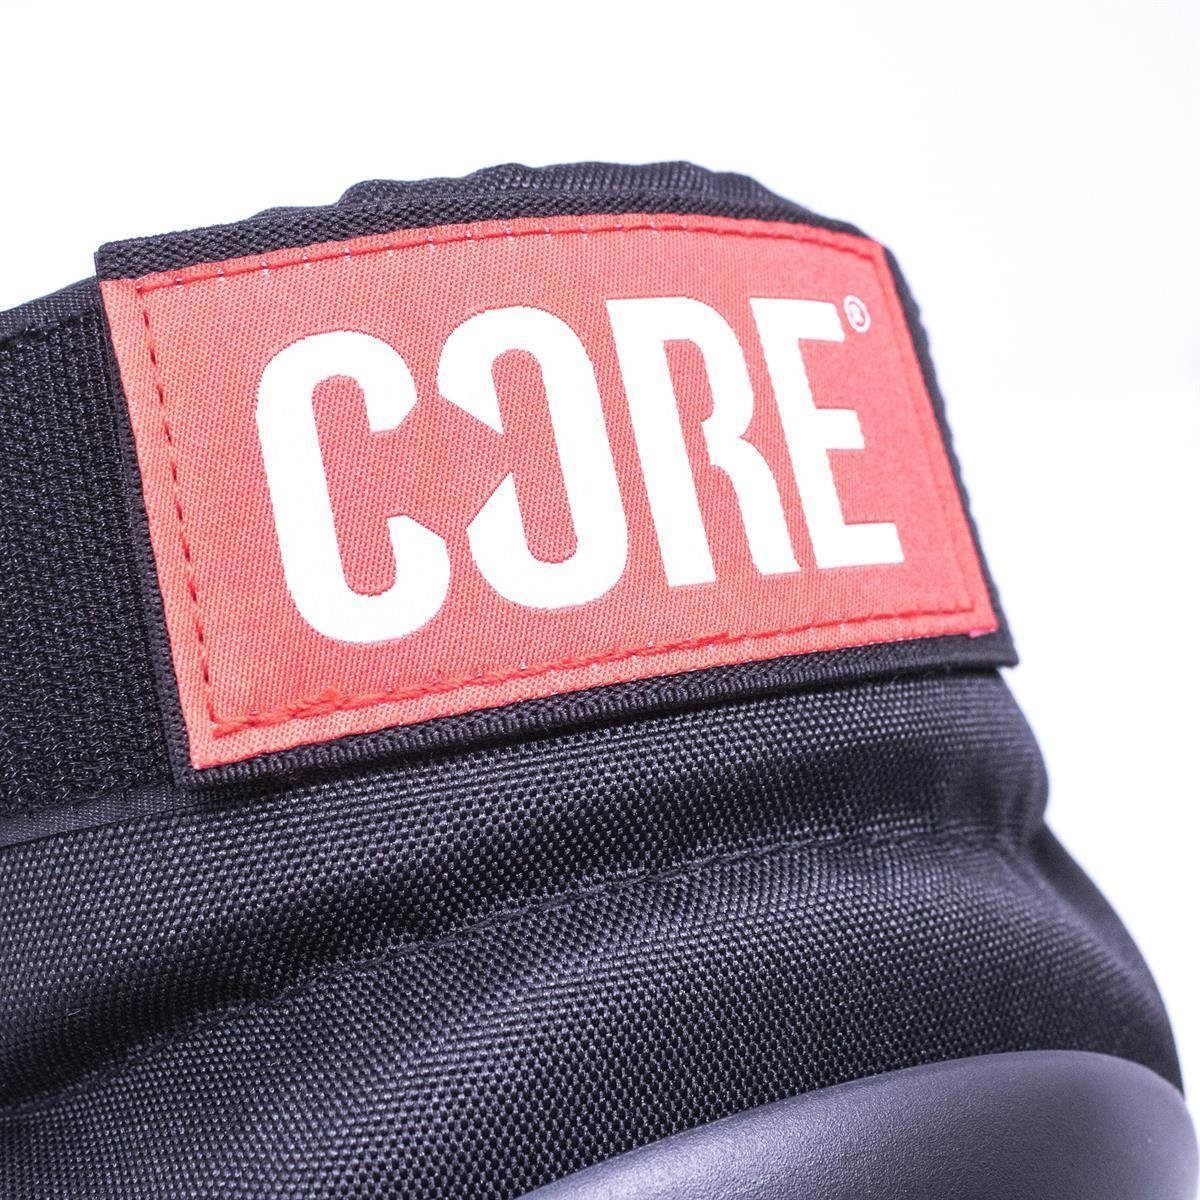 Core Action Pads S Sports Street Protection Protektoren-Set Core Knee Knieschoner schwarz